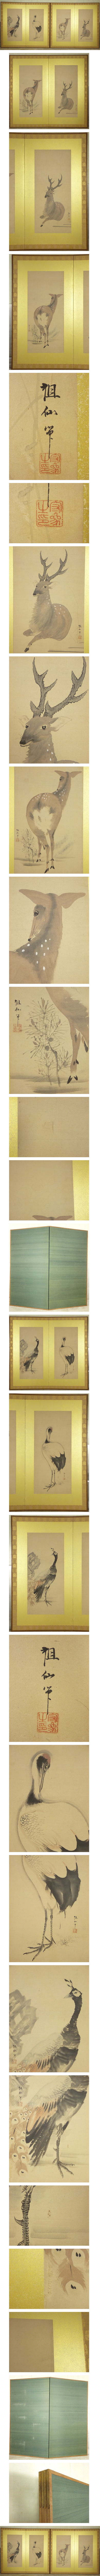 高品質好評森祖仙 孔雀 鶴 鹿の図 二枚折 屏風 一双 高さ 約174.5cm 紙本 肉筆 動物画 日本画 花鳥、鳥獣